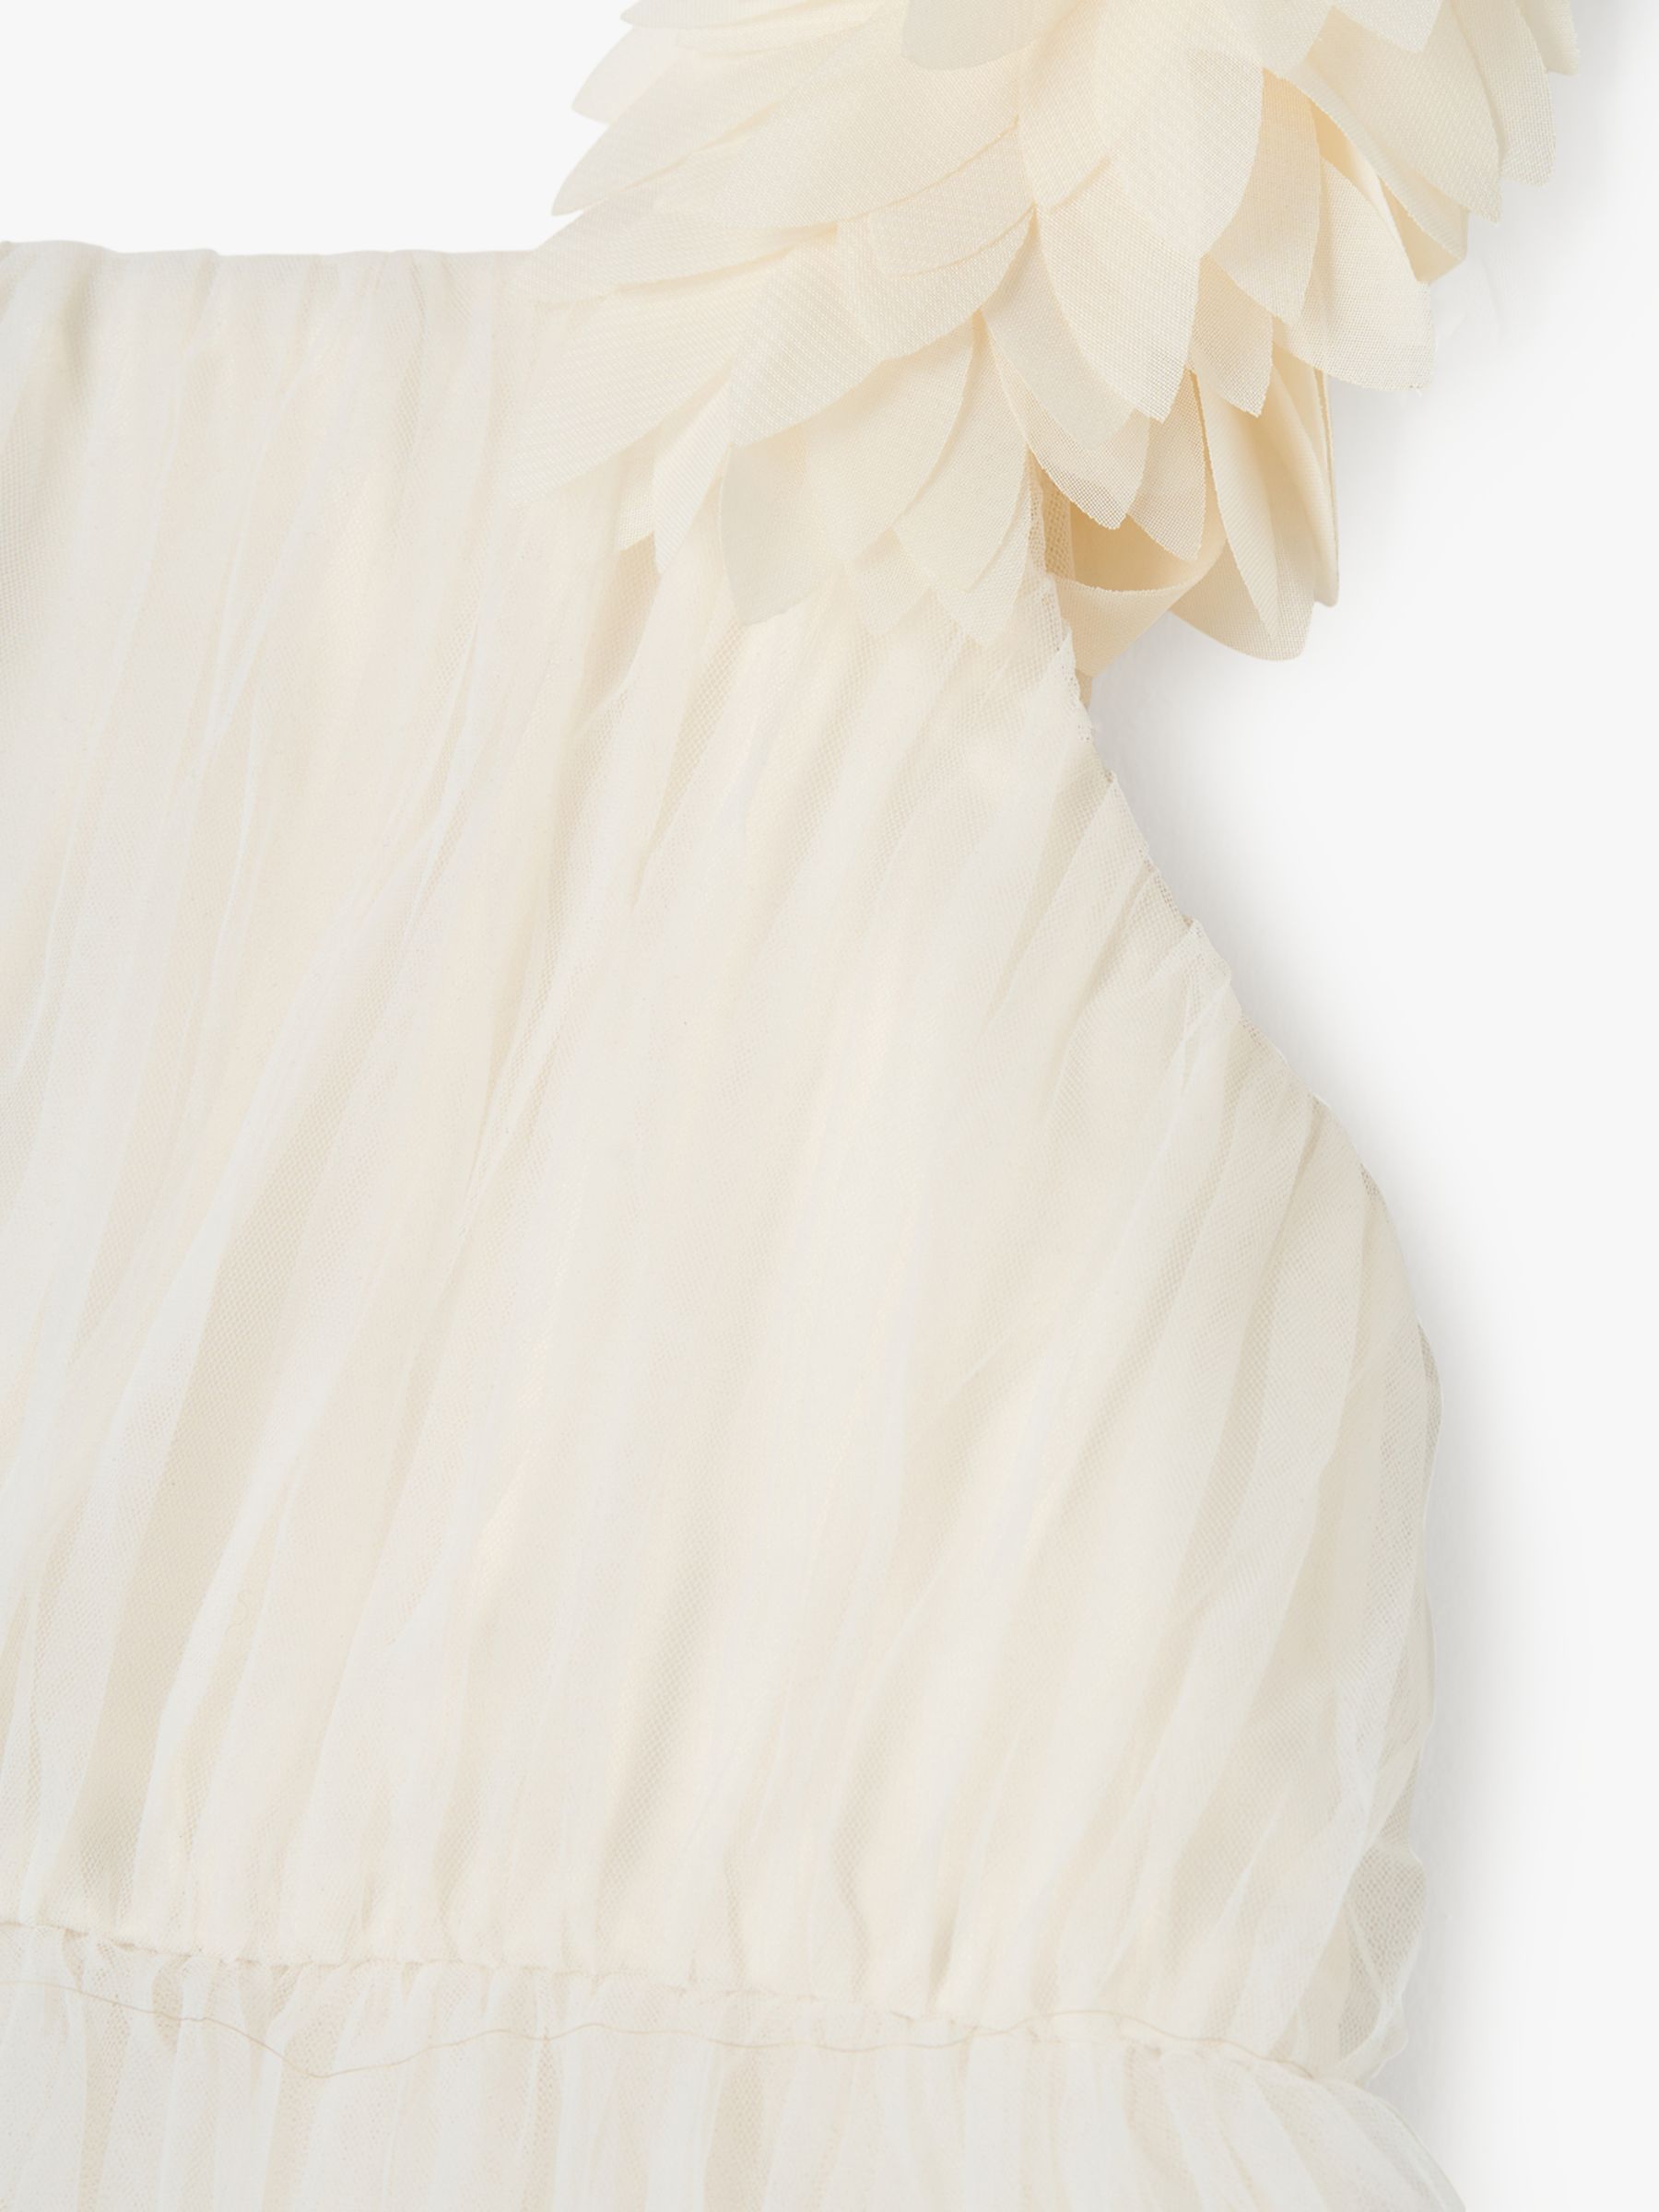 Angel & Rocket Valerie Petal Shoulder Bridesmaid Dress, White, 3 years